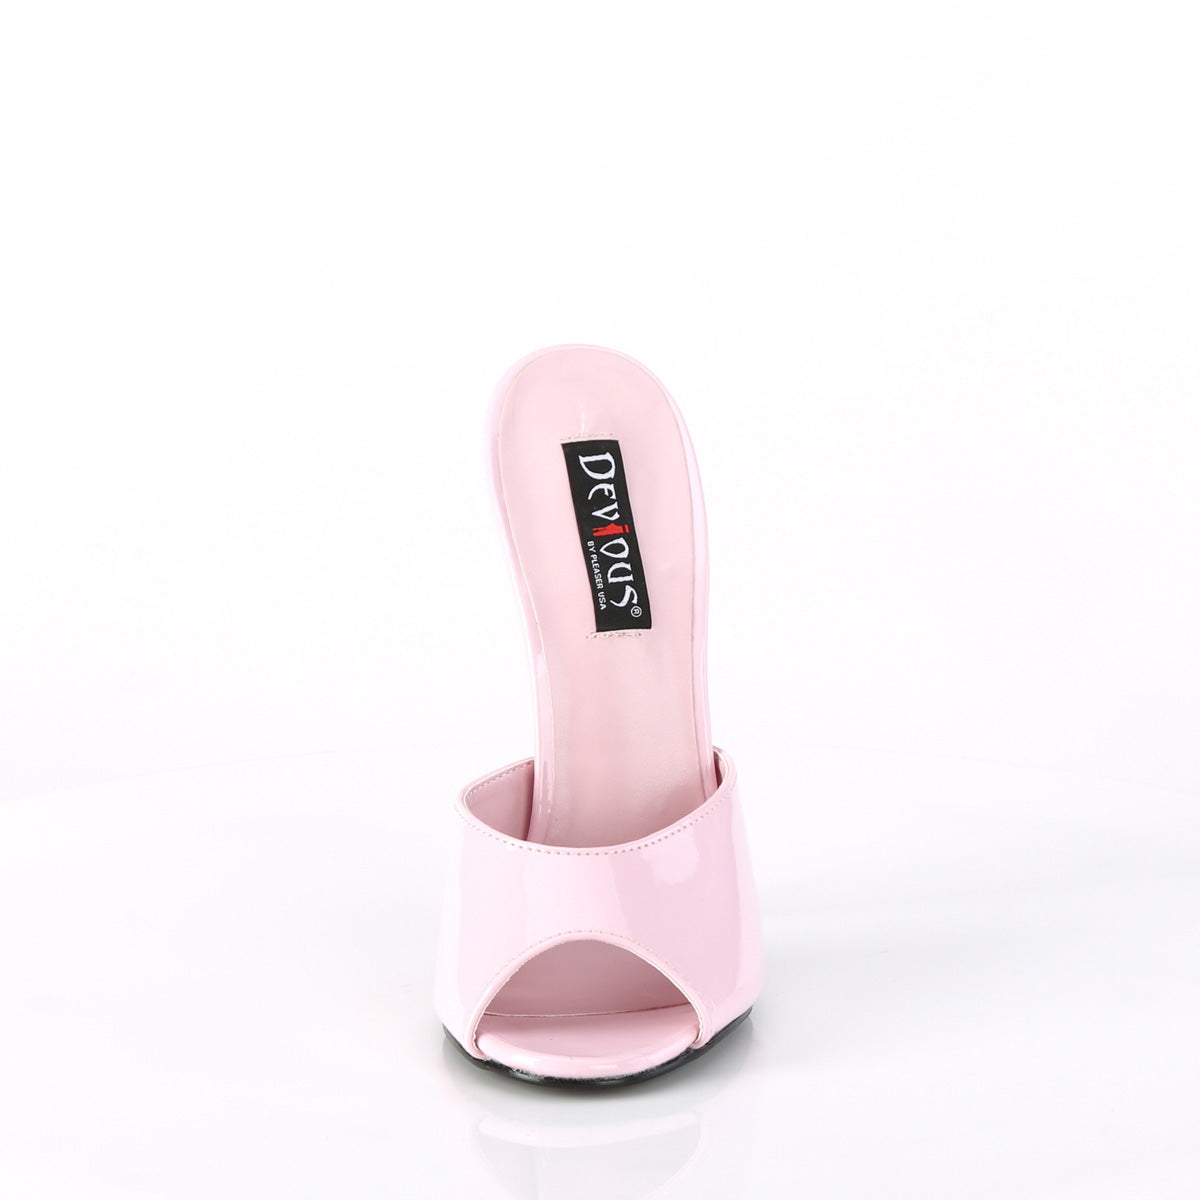 6 Inch Heel DOMINA-101 Baby Pink